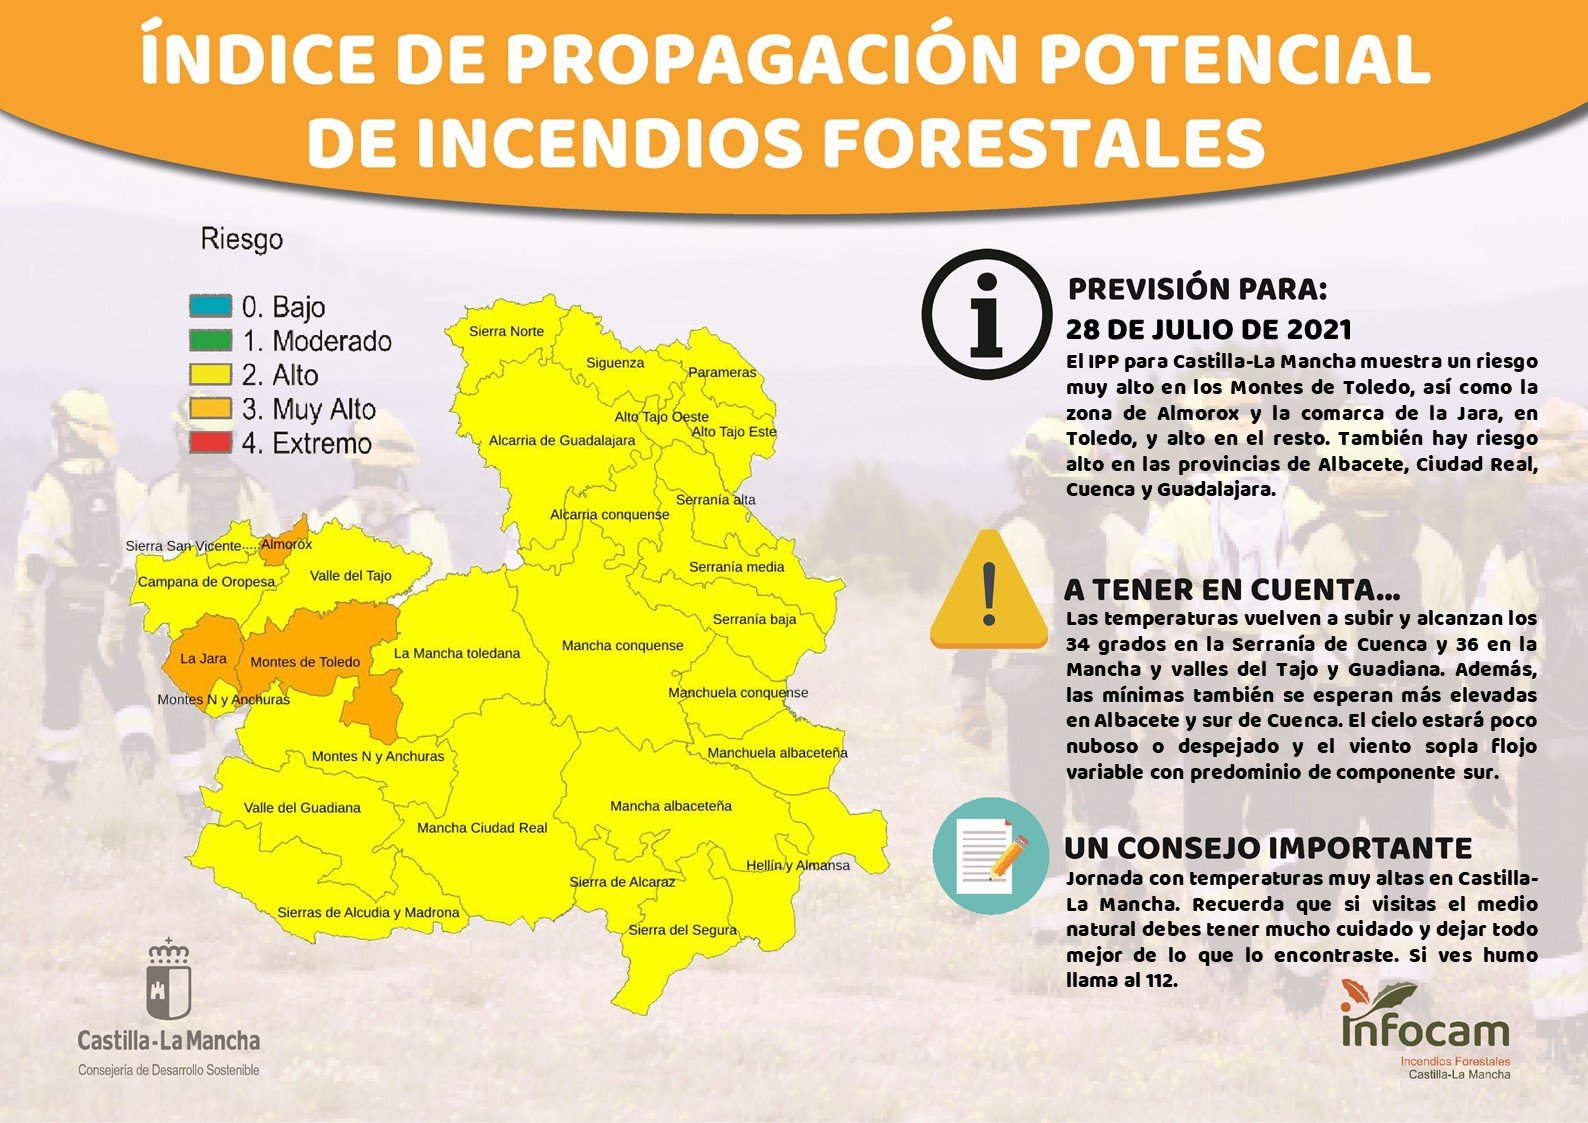 El índice de propagación de incendios forestales era considerado "alto" en toda la provincia de Guadalajara este miércoles, 28 de julio de 2021. (Fuente Infocam)